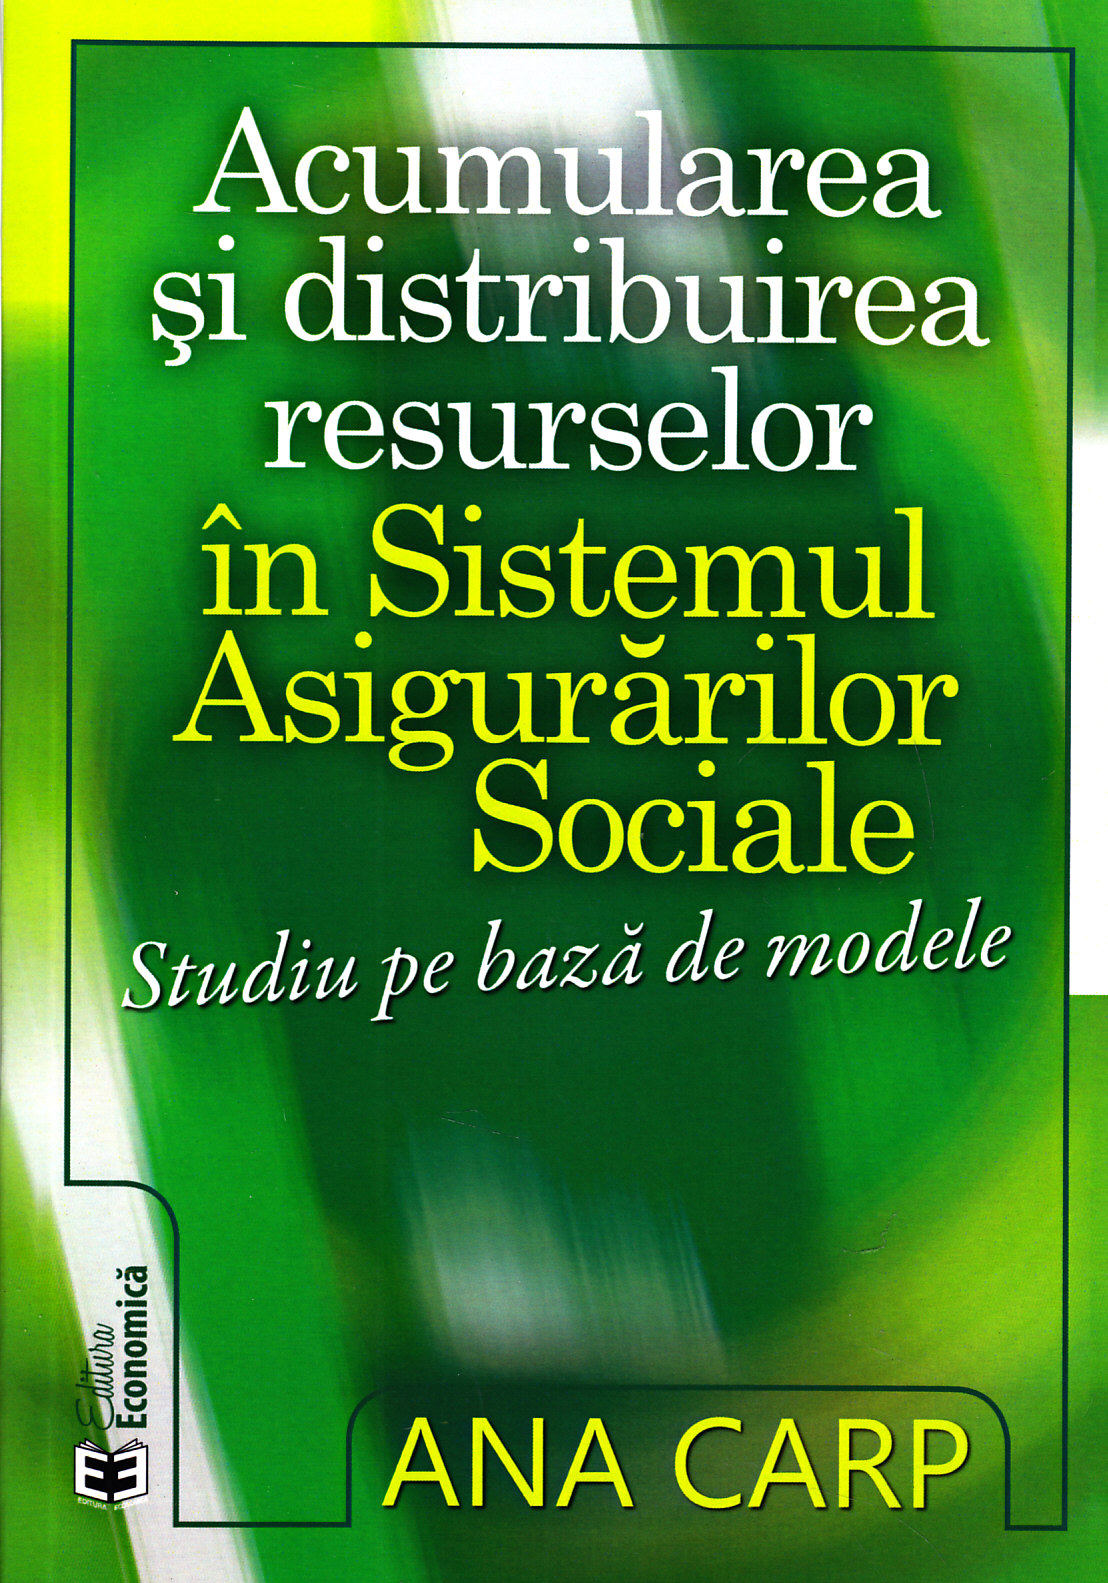 Acumularea si distribuirea resurselor in sistemul asigurarilor sociale - Ana Carp